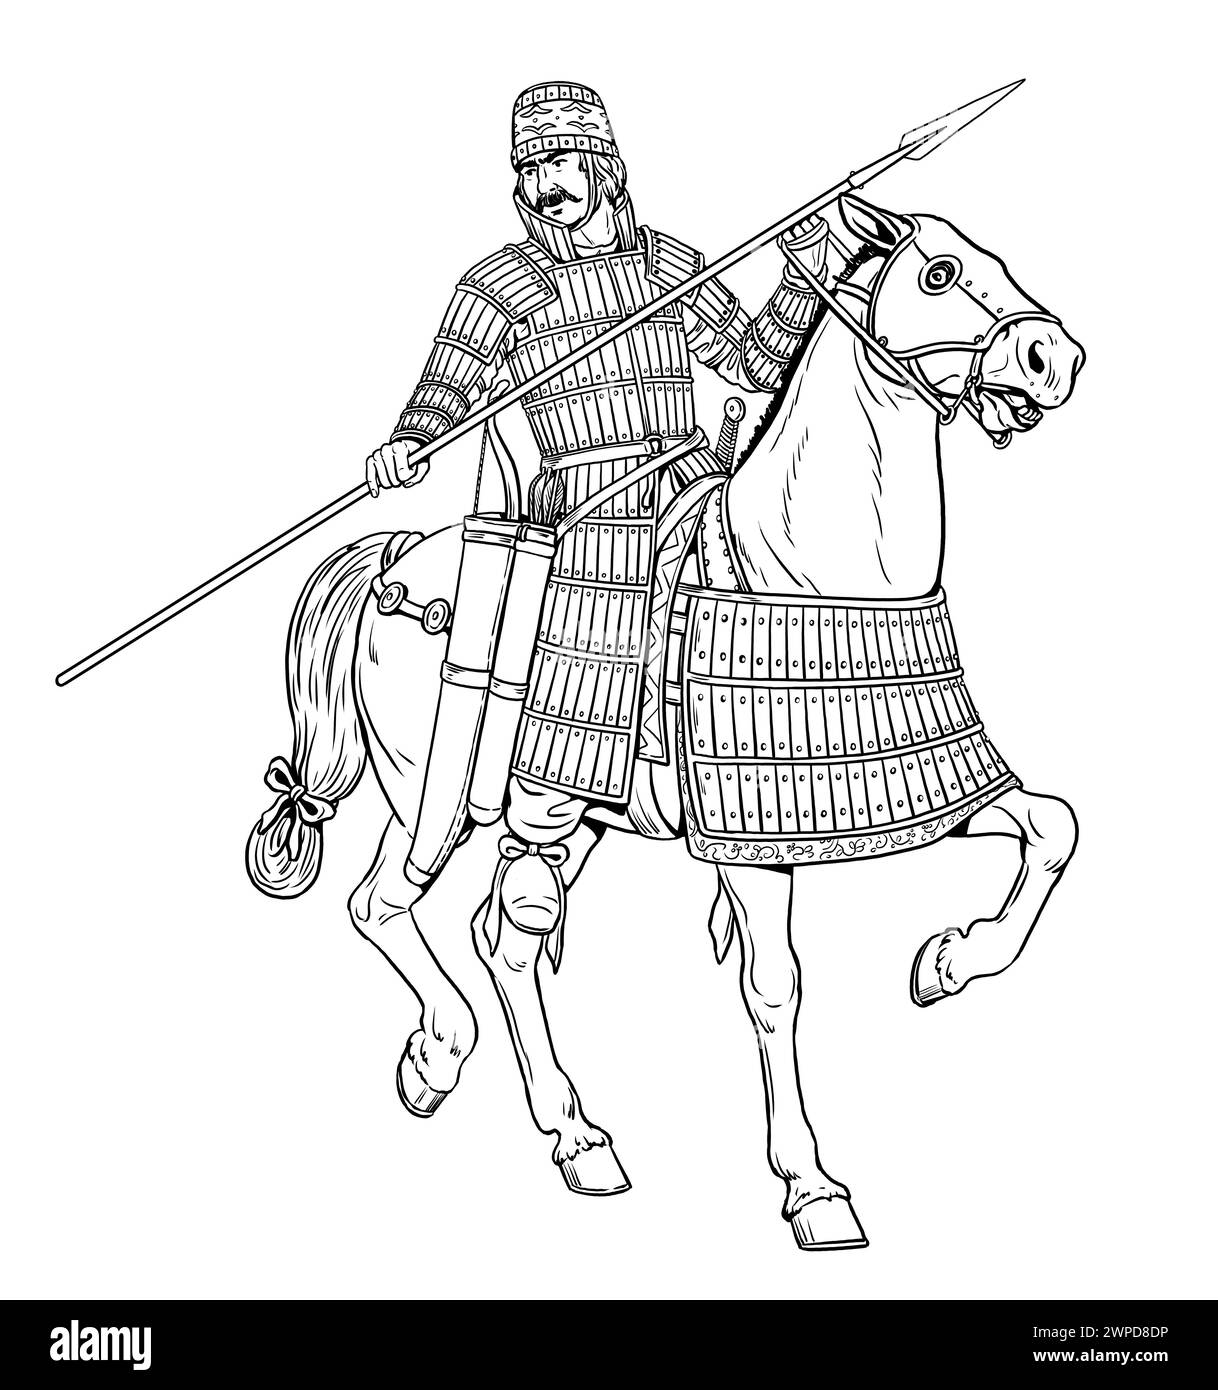 Antica Cataphract partica in attacco. Disegno di cavalleria antica e medievale. Foto Stock